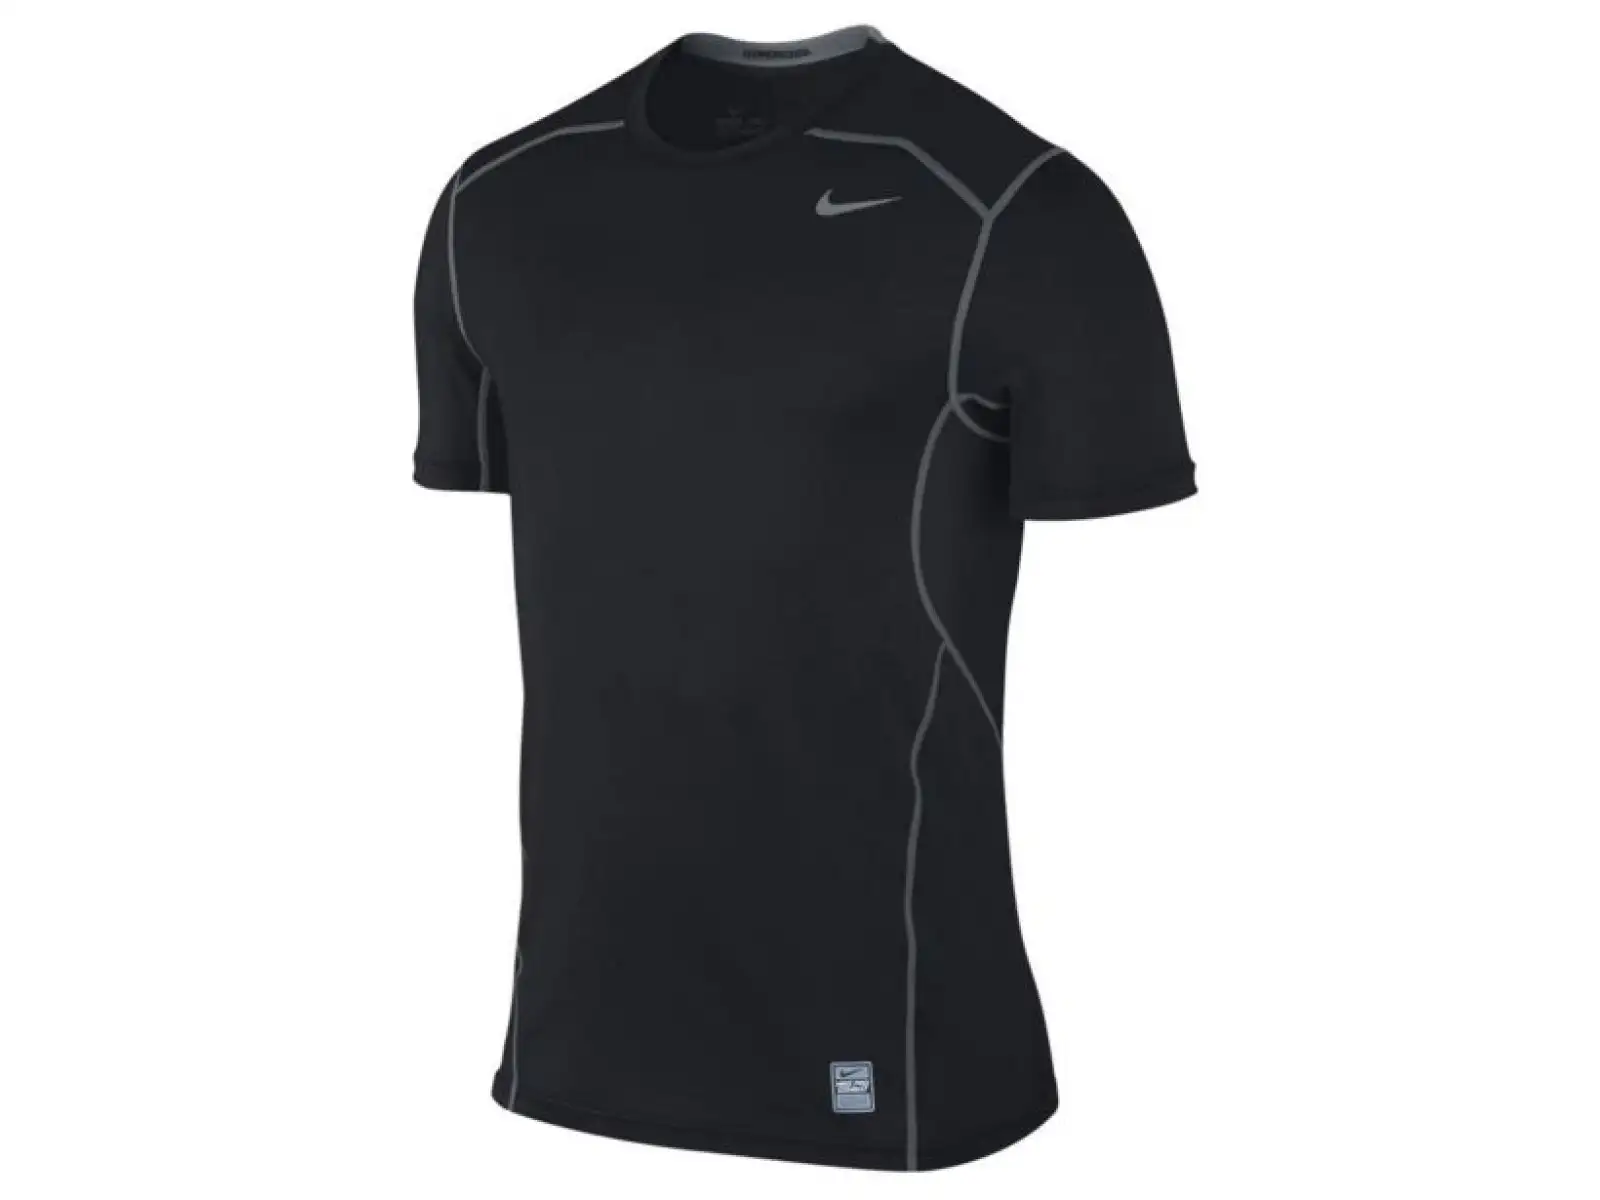 Nike Hypercool Fitted pánské funkční triko černé/stříbrné